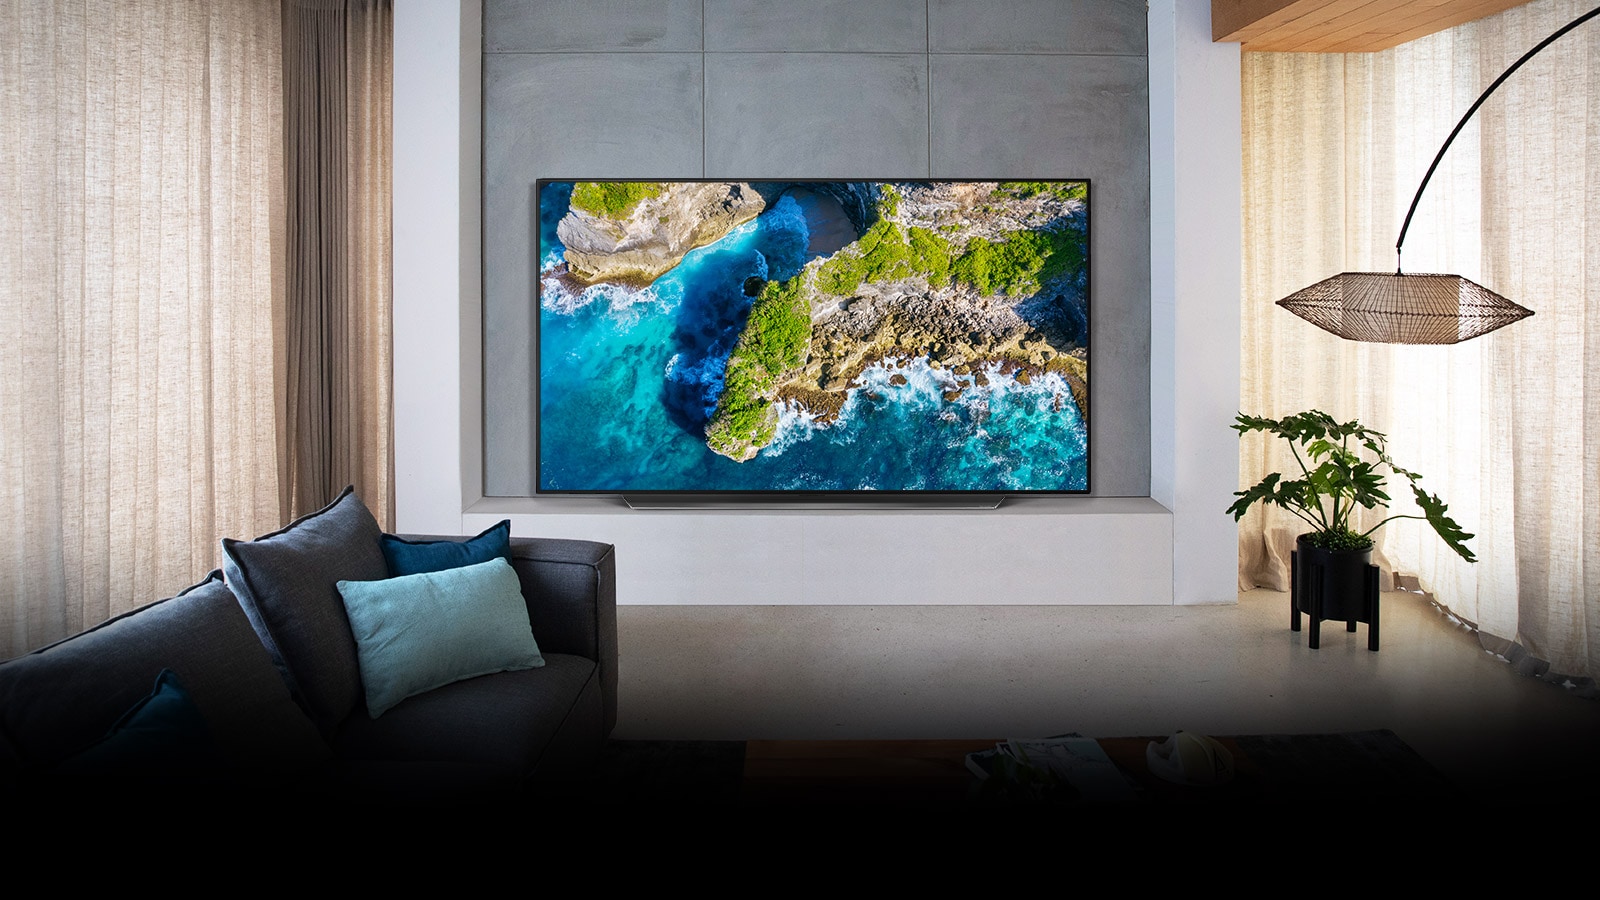 Μια τηλεόραση που βρίσκεται σε ένα πολυτελές σαλόνι δείχνει μια εικόνα της φύσης από ψηλά